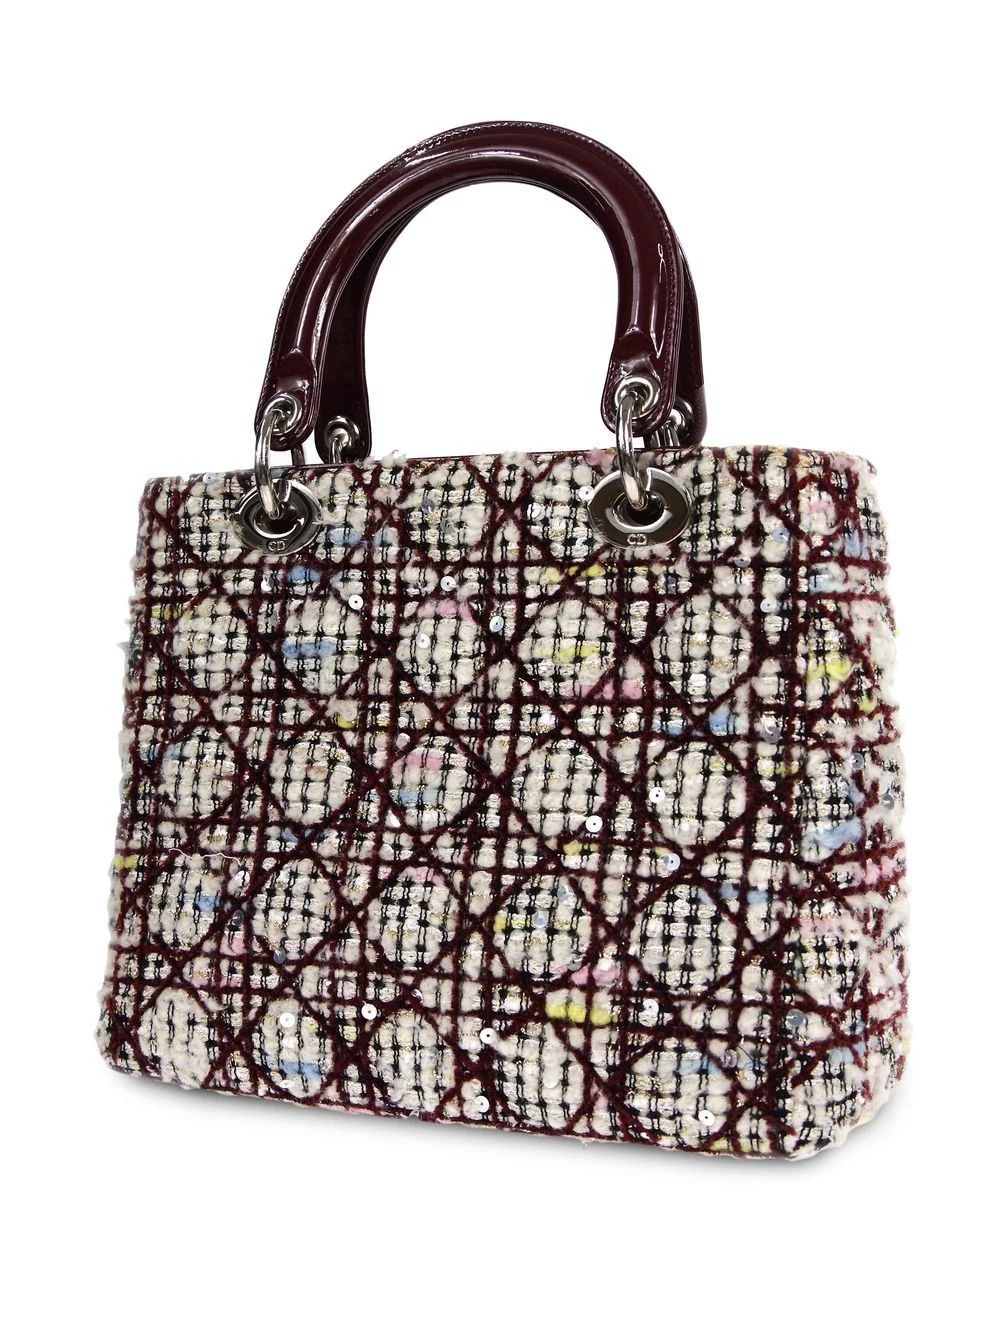 2000 pre-owned Lady Dior handbag | Farfetch Global